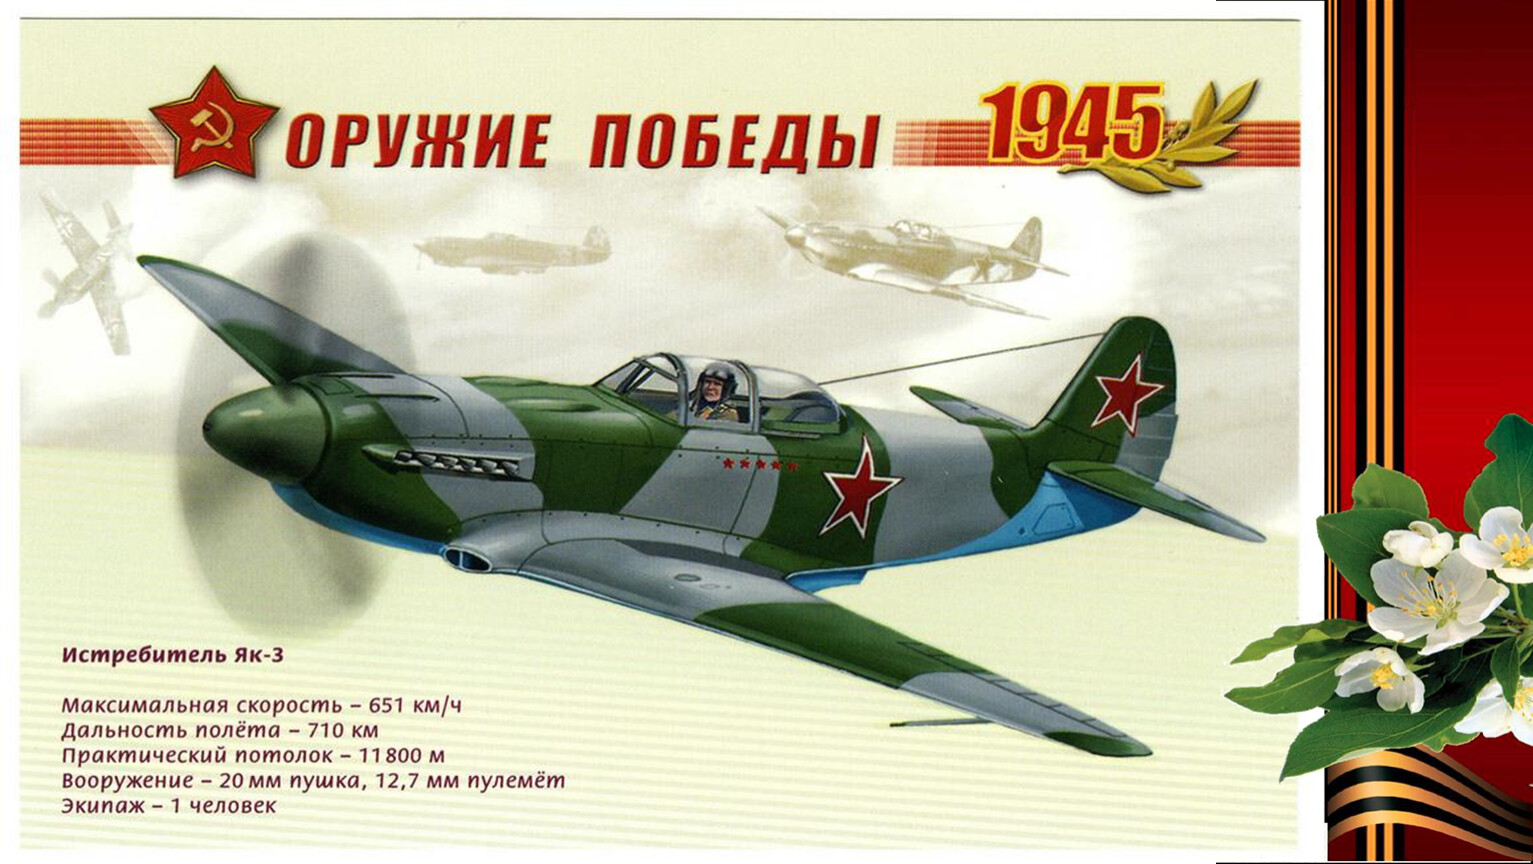 Як-1 истребитель оружие Победы